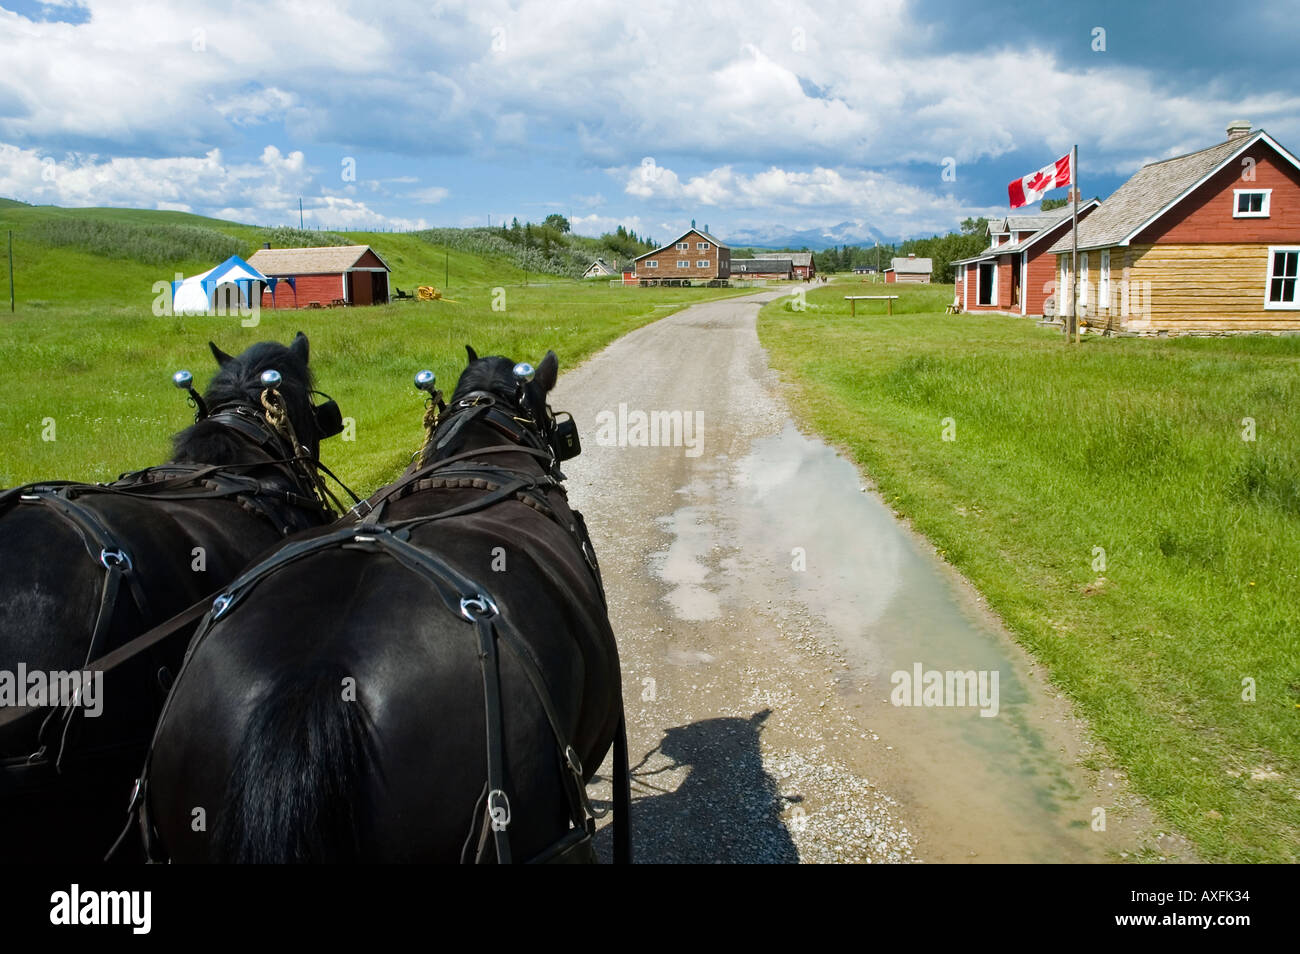 Eine Pferdekutsche nähert sich eine Stadt an der Bar U Ranch National Historic Site in Southern Alberta Kanada Stockfoto